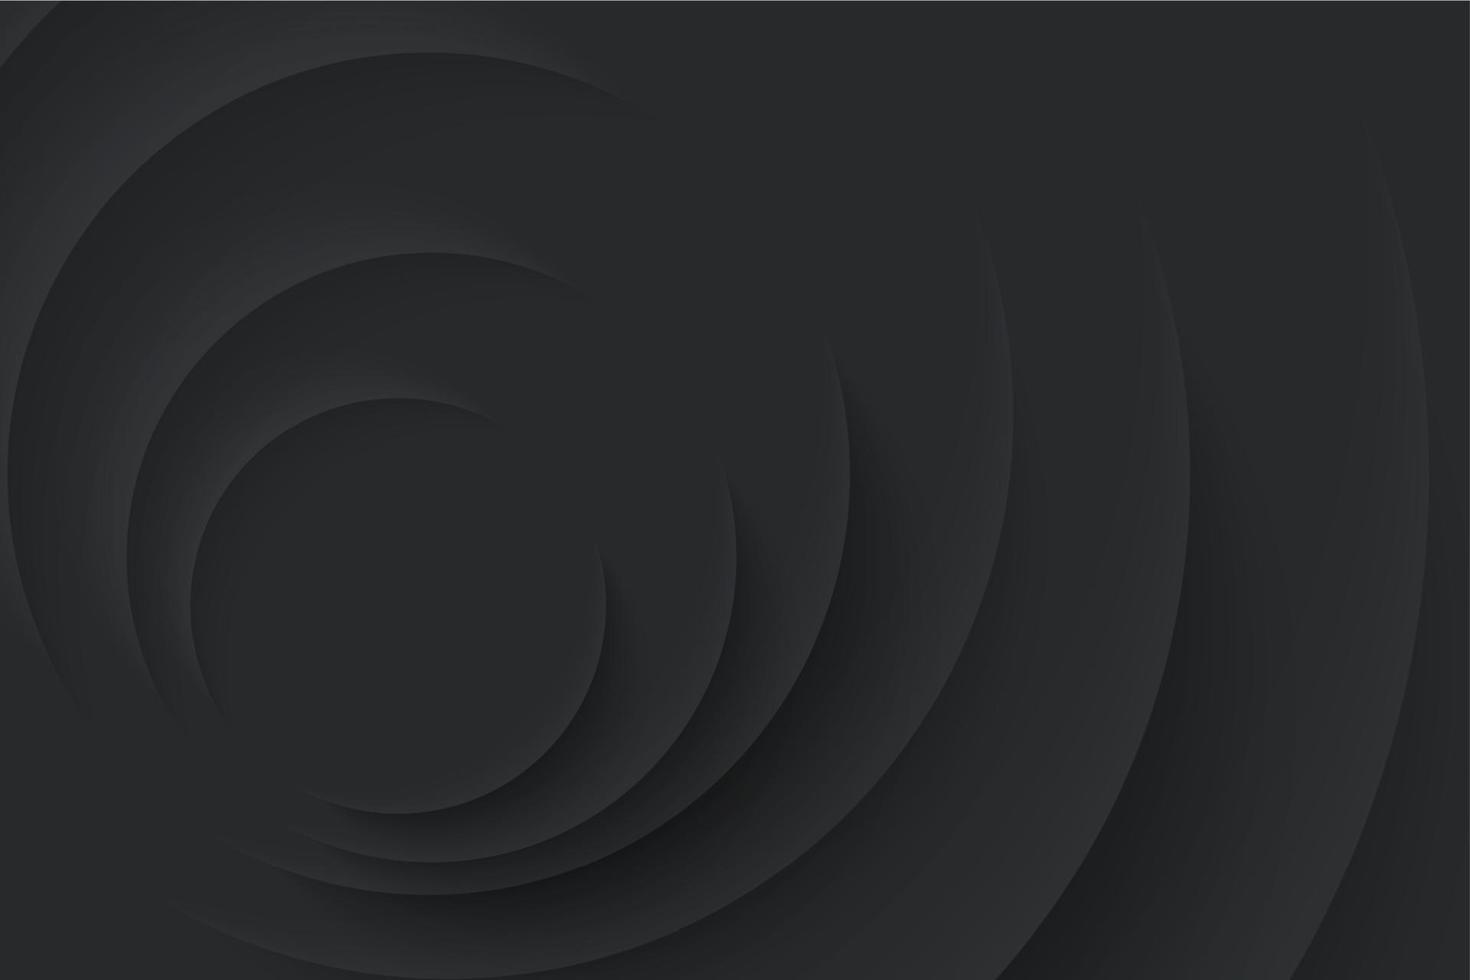 mjuk, klar och enkel trogen neumorphism form element design. minimalistisk svart bakgrund. abstrakt 3d cirkel papperssår lager tapet vektor